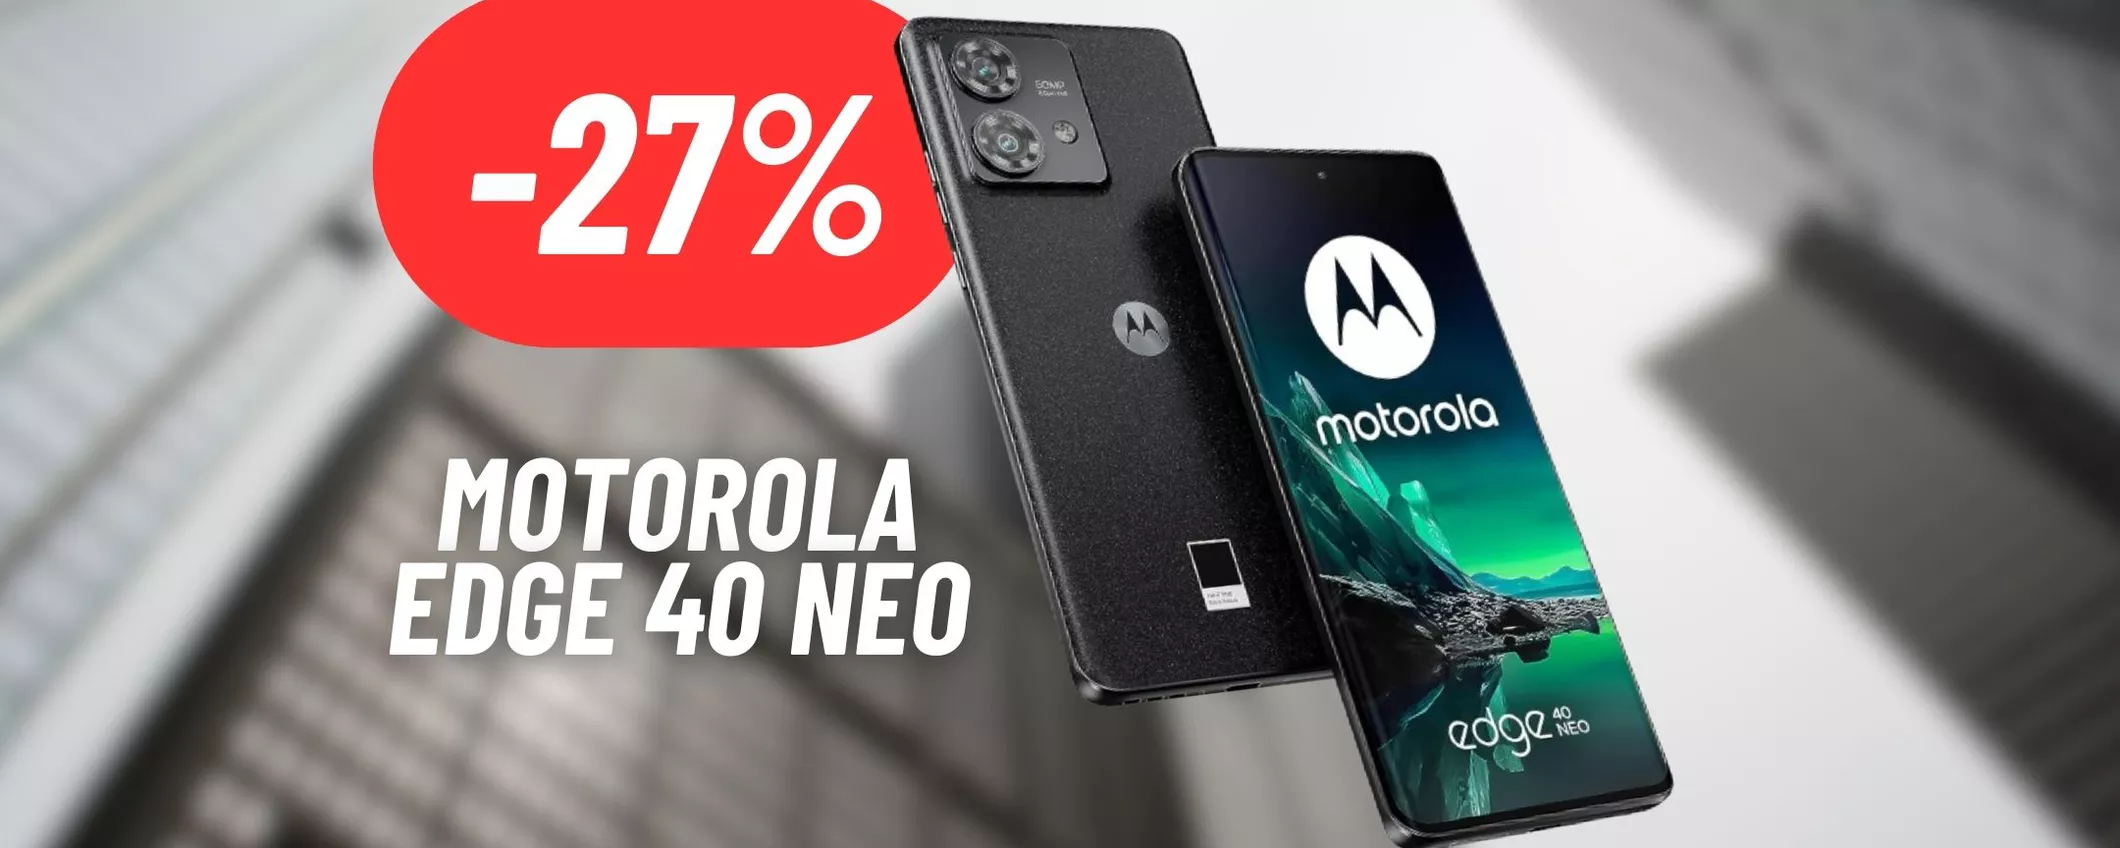 CALA A PICCO il prezzo del Motorola Edge 40 Neo: OFFERTA CHOC SU AMAZON